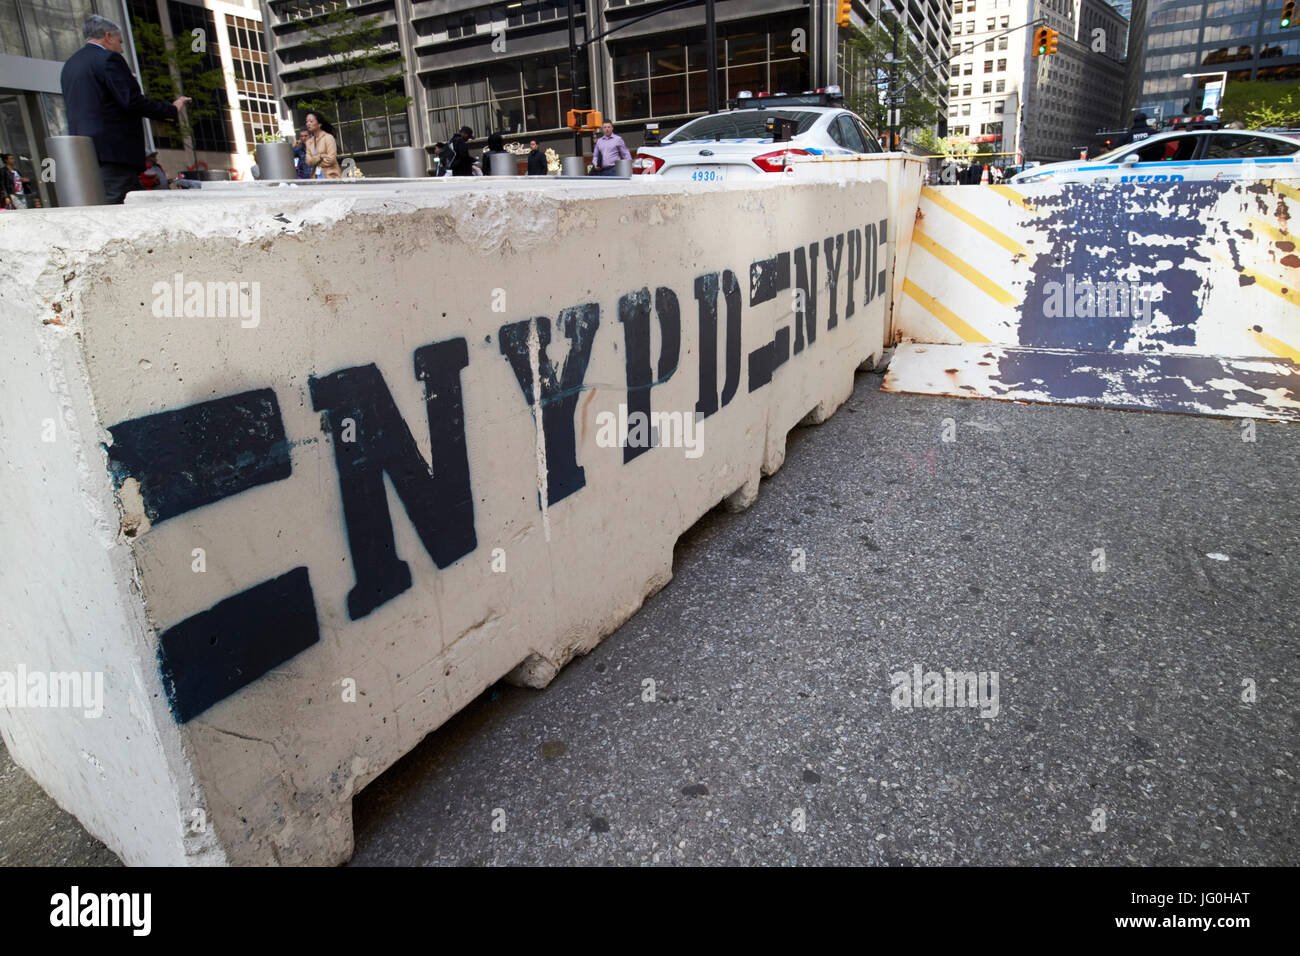 Nypd concrete delle barriere di sicurezza world trade center area di sicurezza New York City USA Foto Stock